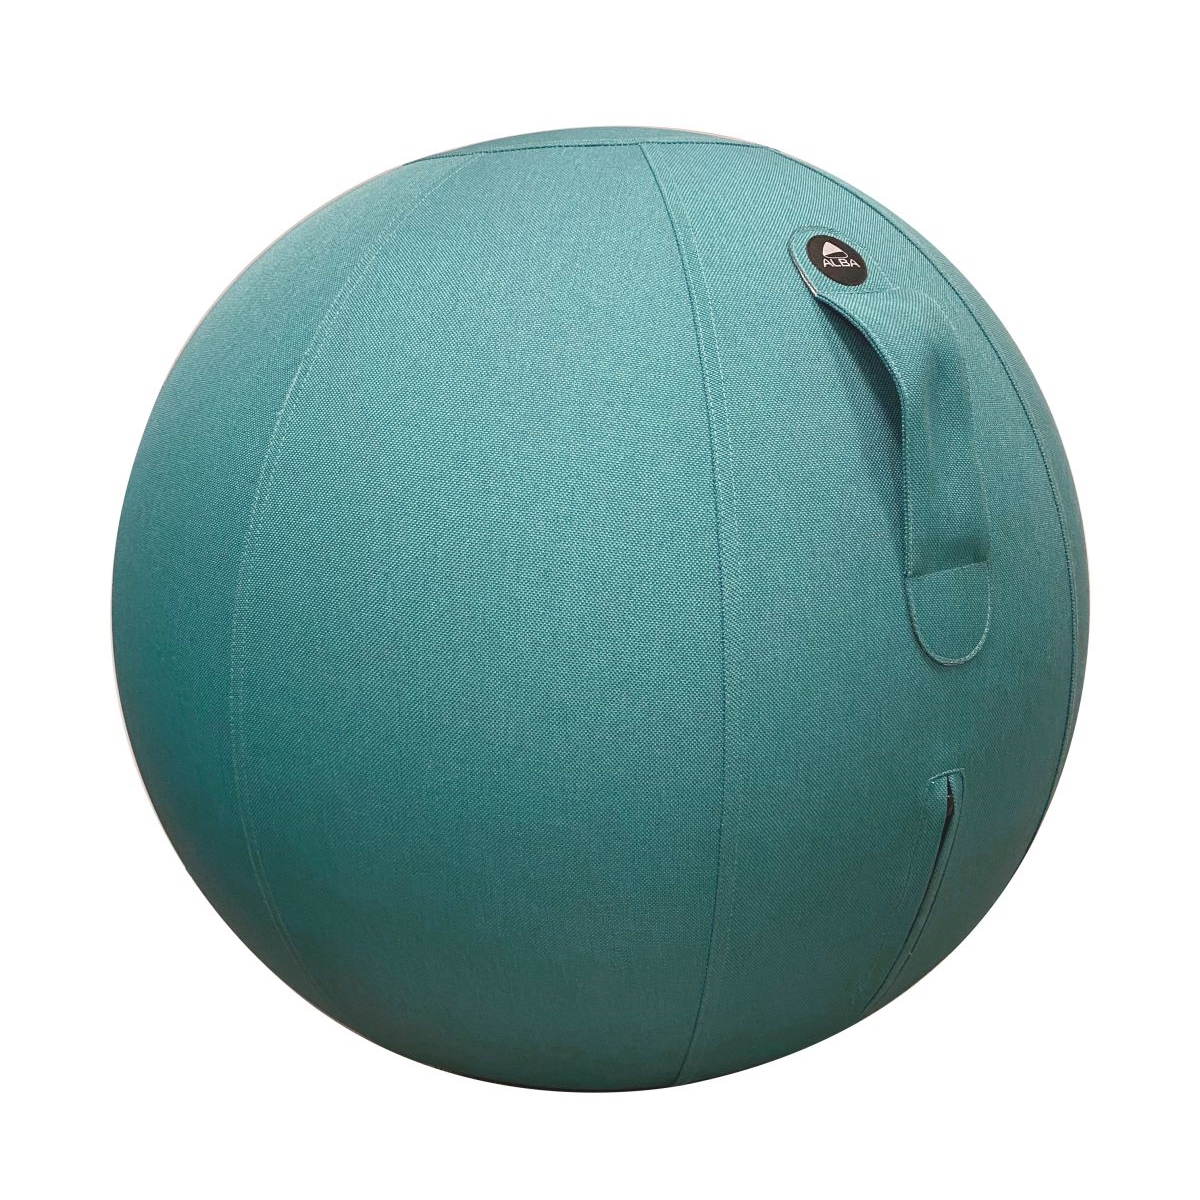 Ergonomický balanční sedací míč Alba, tyrkysový